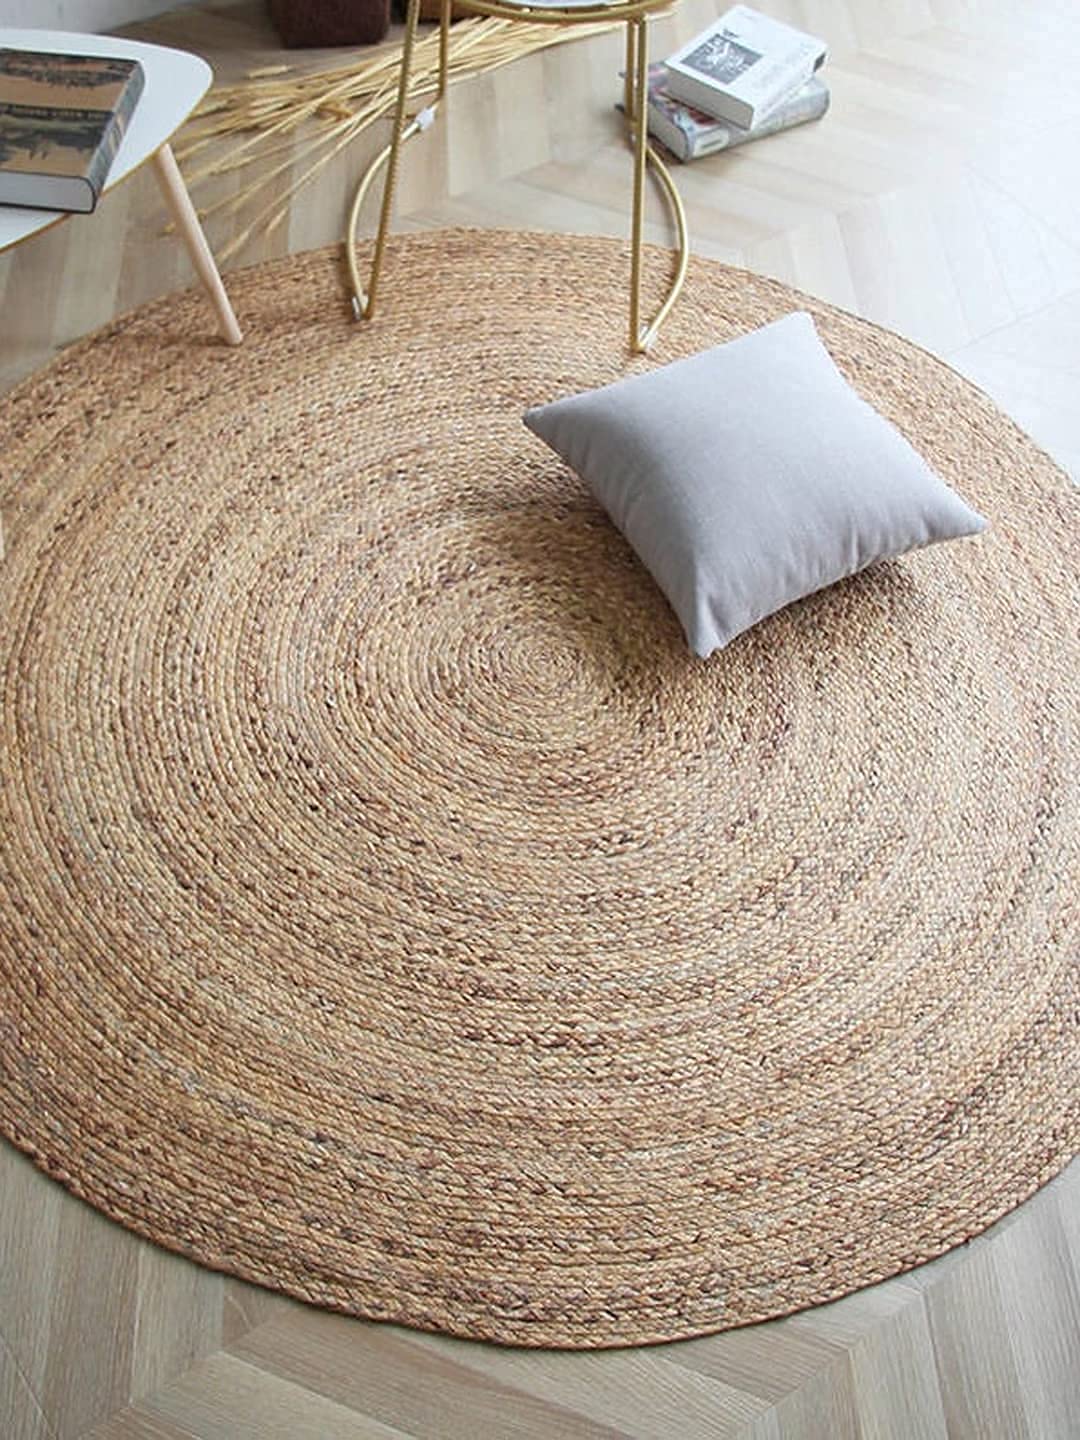 Floor carpet Design